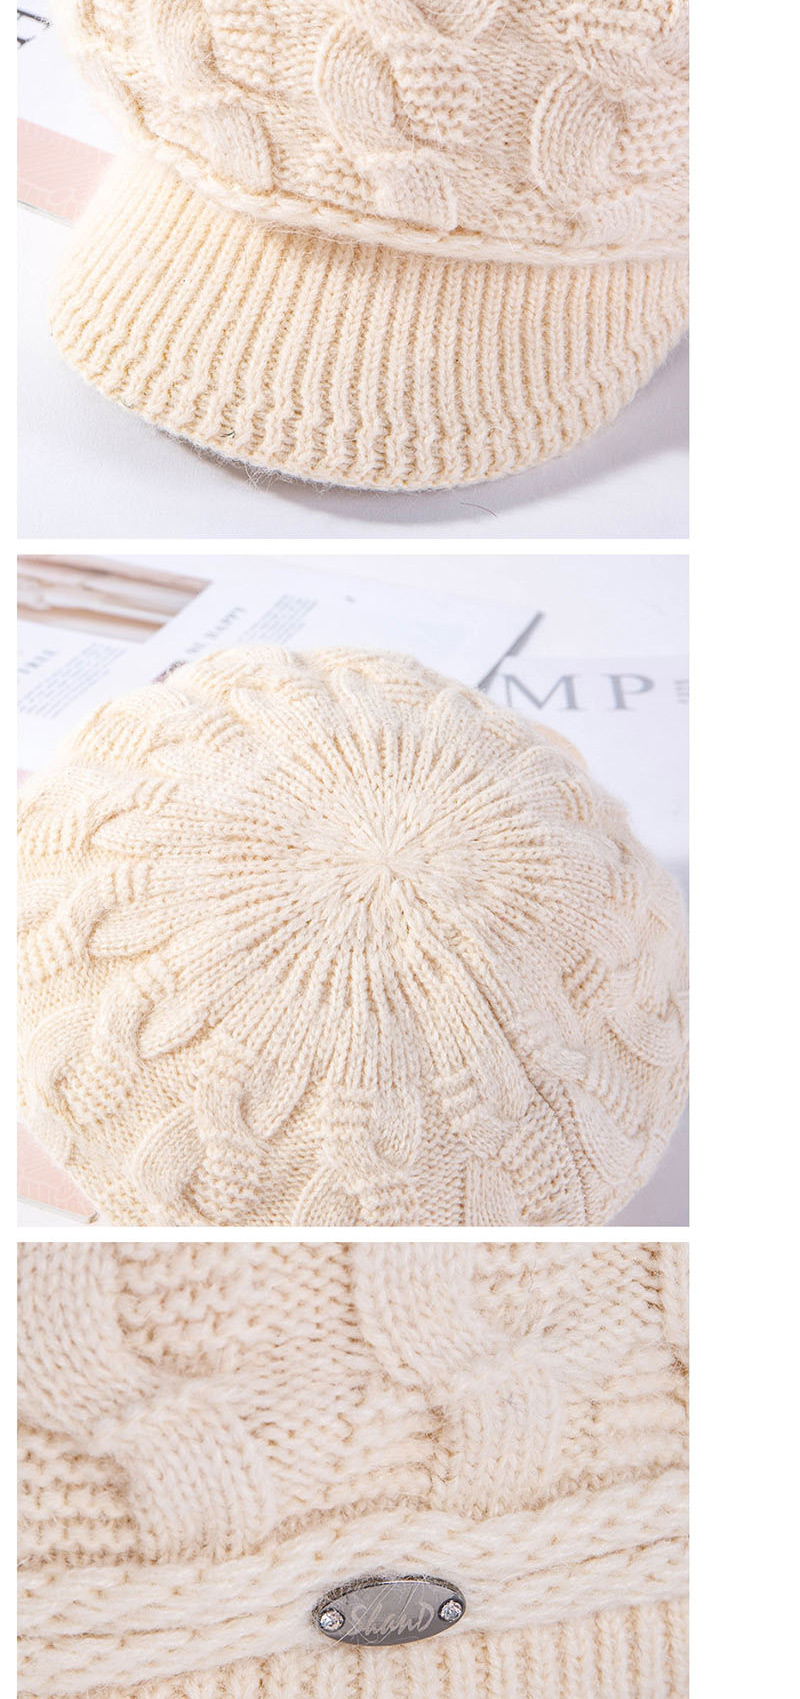 Fashion Jujube Plus Velvet Pattern Rabbit Fur Cap,Knitting Wool Hats